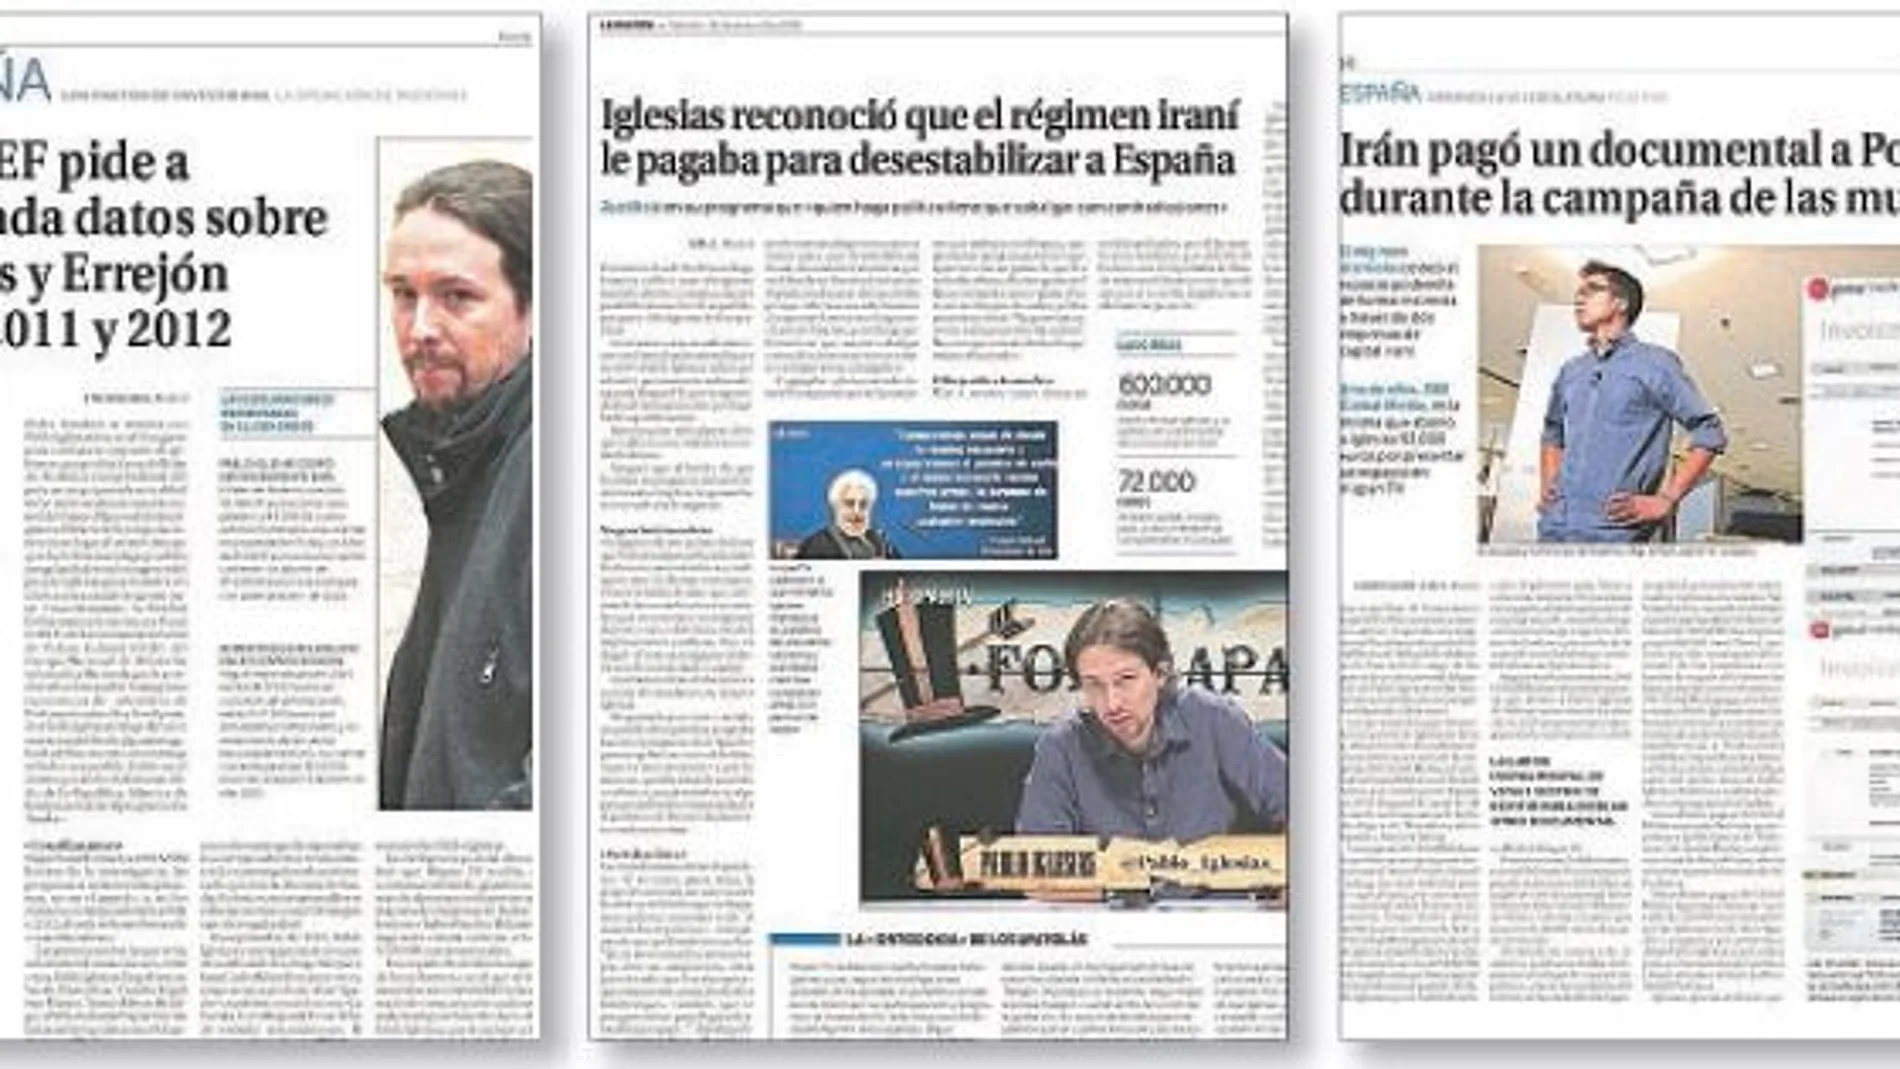 LA RAZÓN ya publicó que la UDEF pidió a Hacienda datos sobre Iglesias y Errejón en los años 2011 y 2012 y que Irán pagó un documental a Podemos durante la campaña electoral de las elecciones municipales de 2015